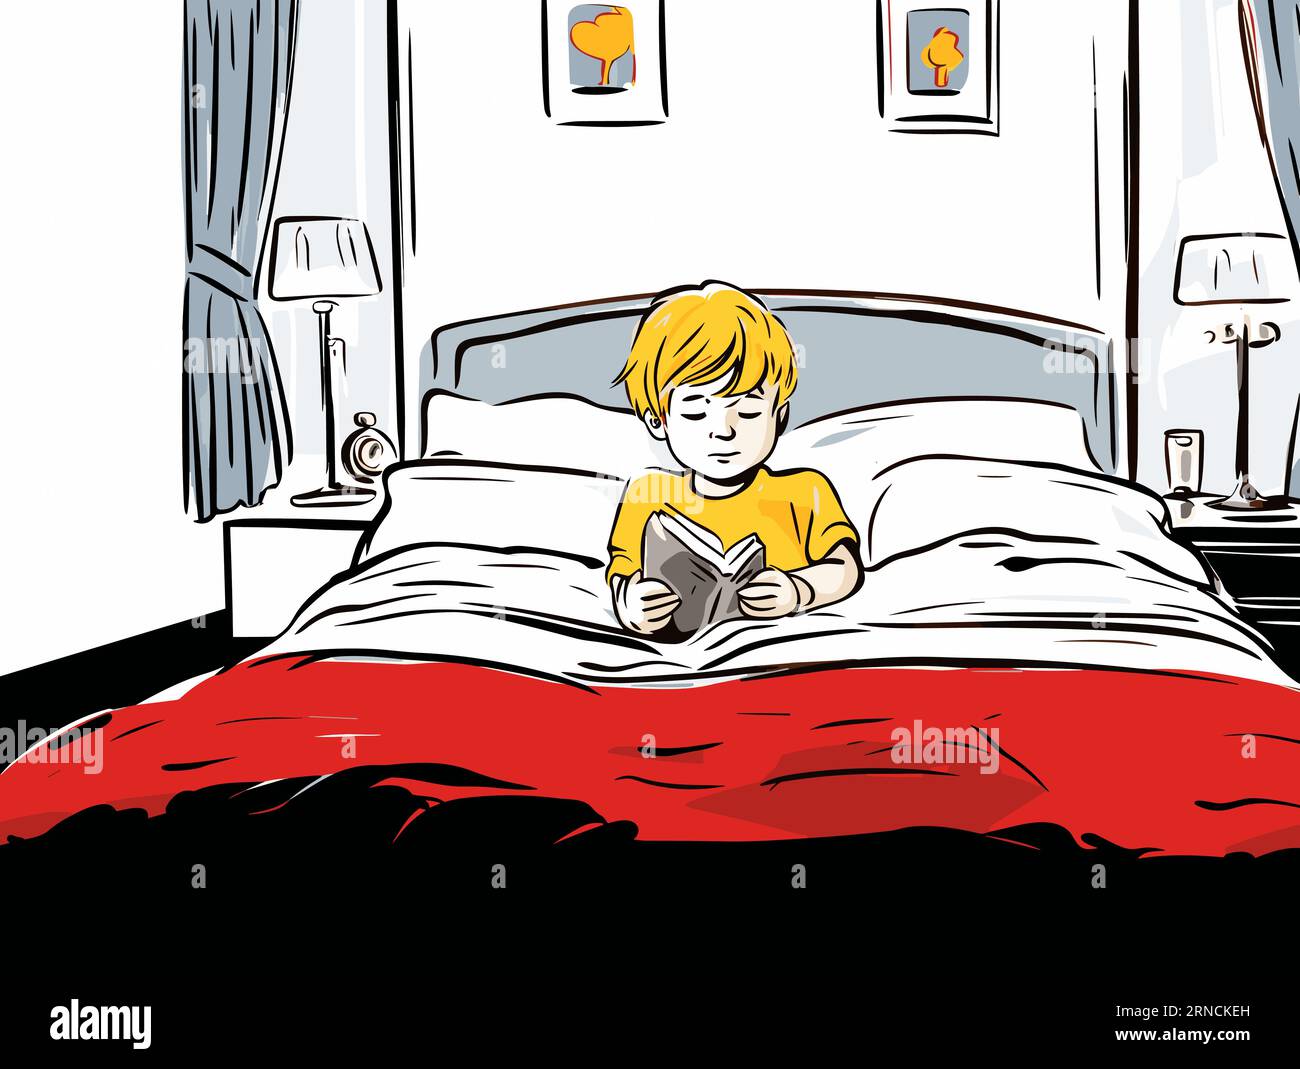 Junge, der auf Einem weißen Bett liegt und Ein rotes Hemd trägt, im Stil journalistischer Cartoons, Storybook Illustration Stock Vektor